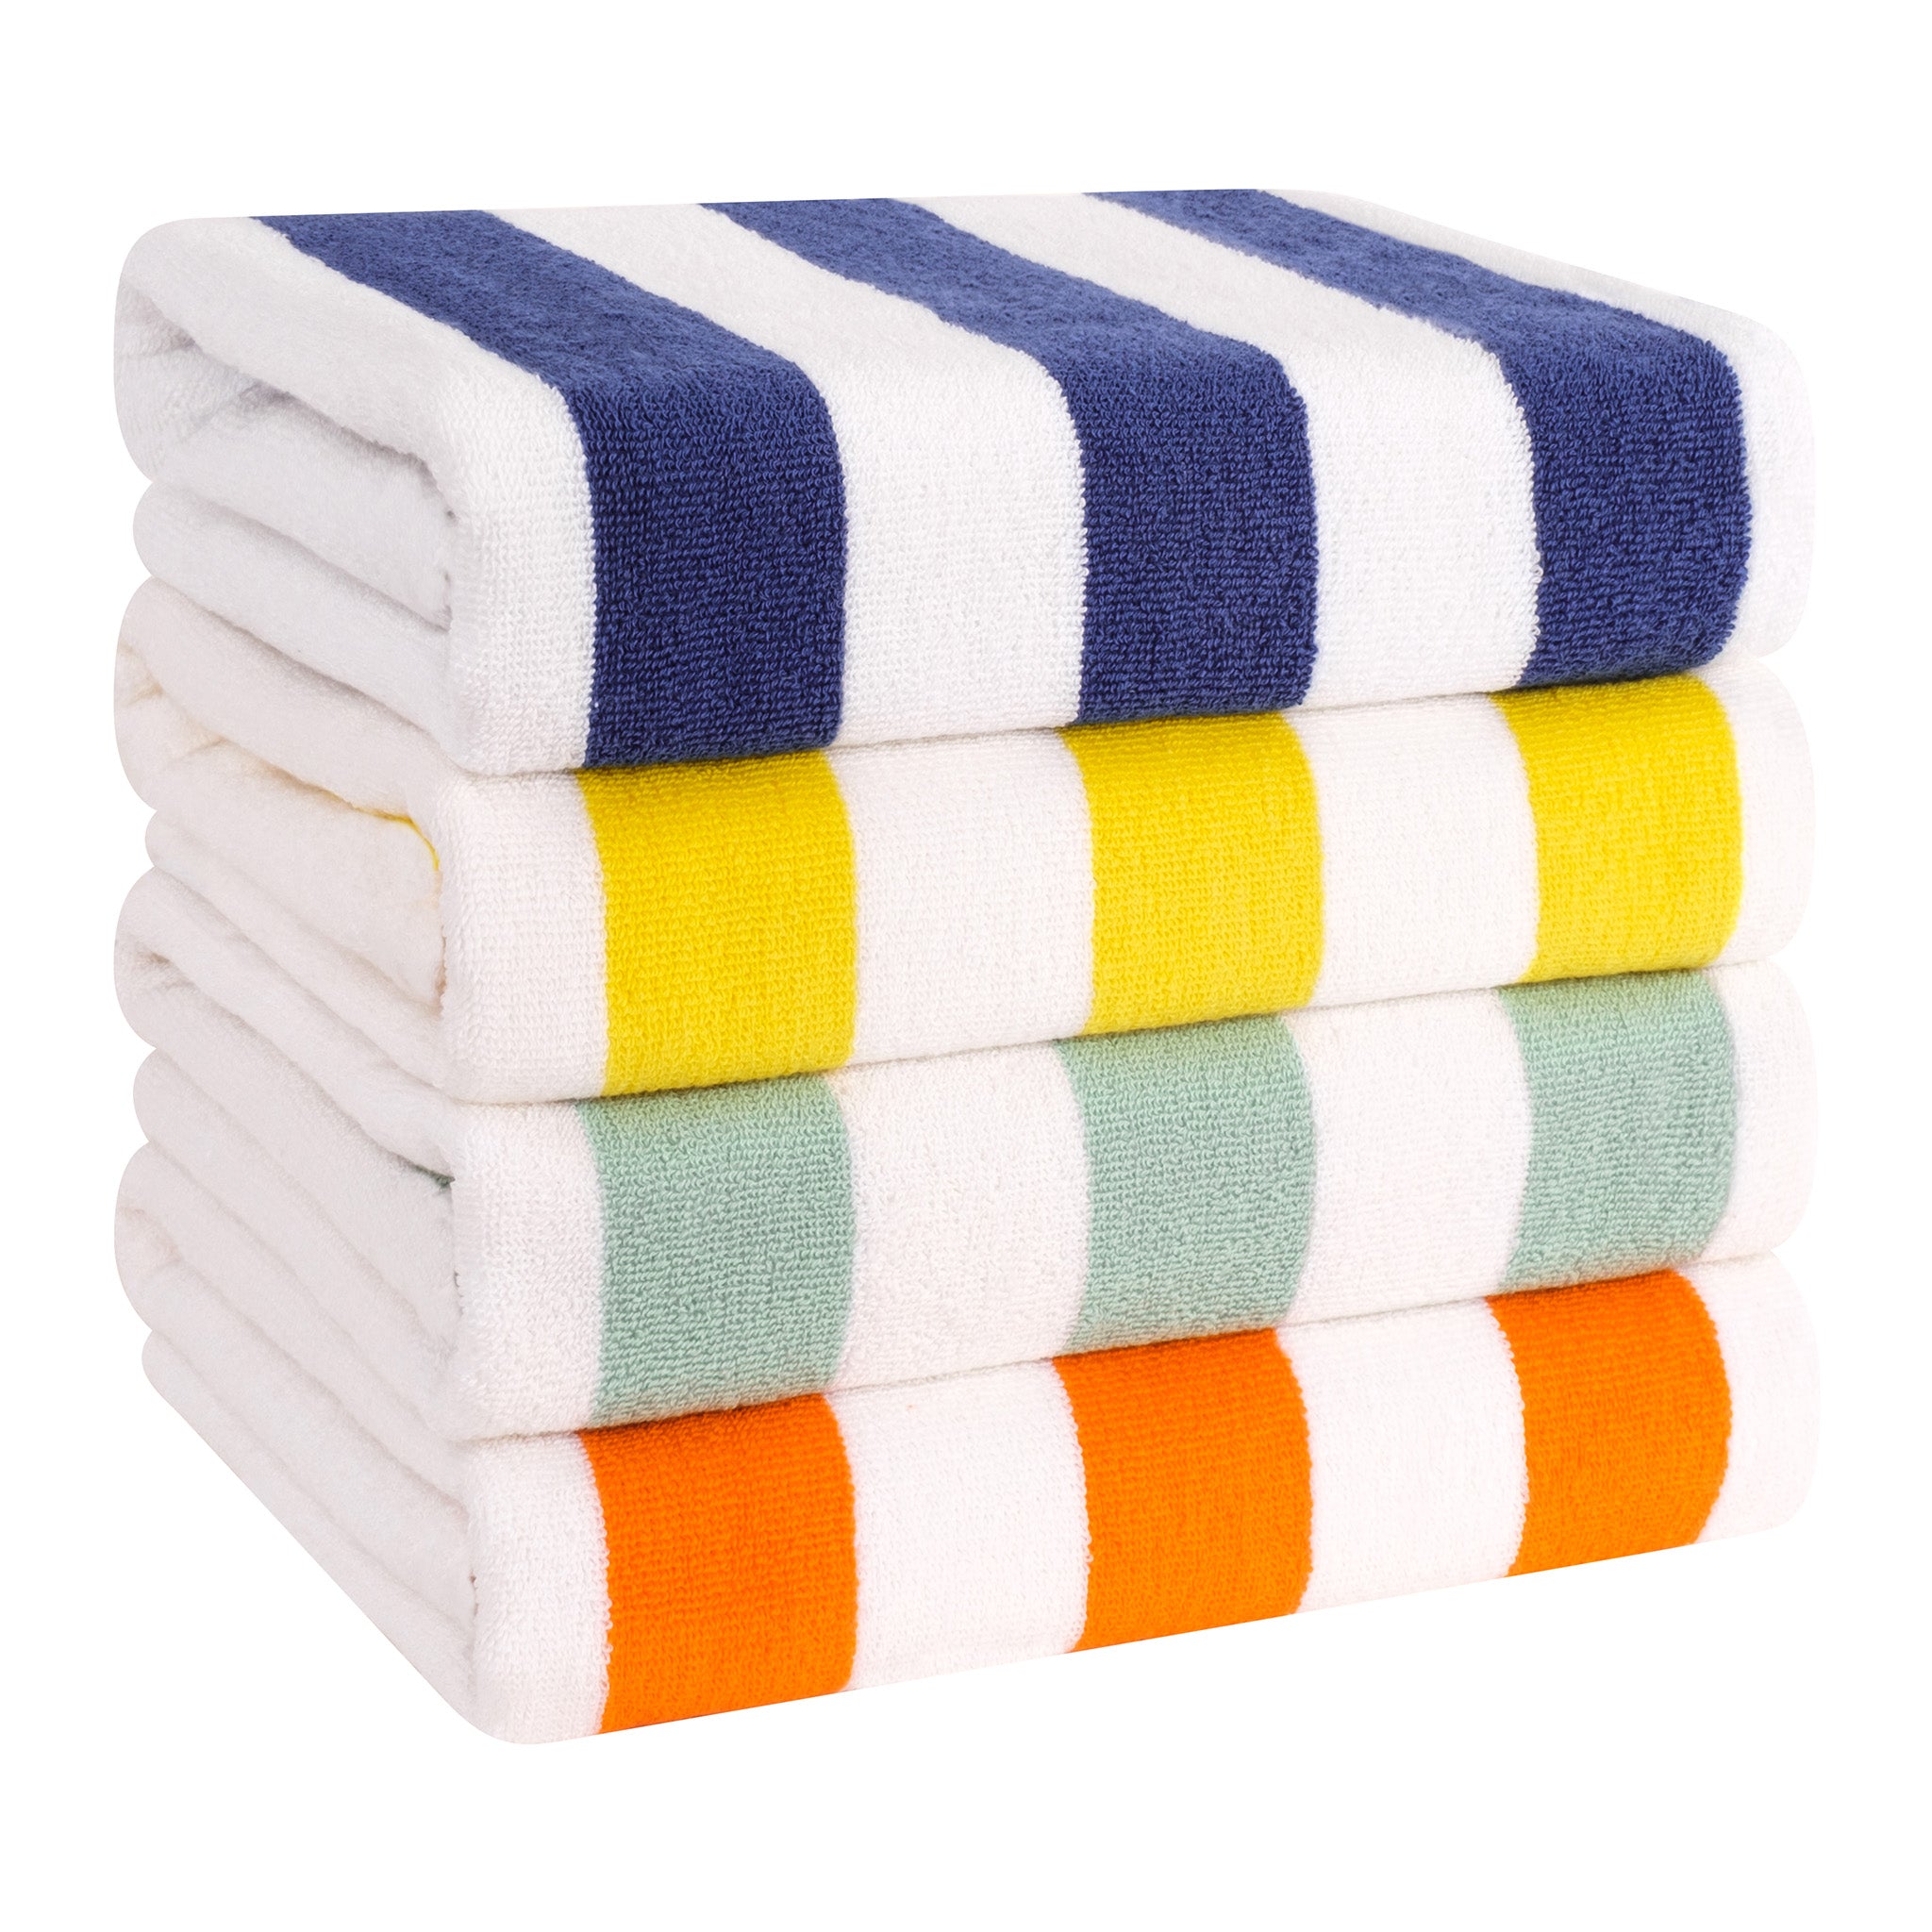 https://americansoftlinen.com/cdn/shop/files/american-soft-linen-cabana-striped-4-pack-cotton-beach-towels-30x60-8-set-case-pack-mix-1.jpg?v=1702898875